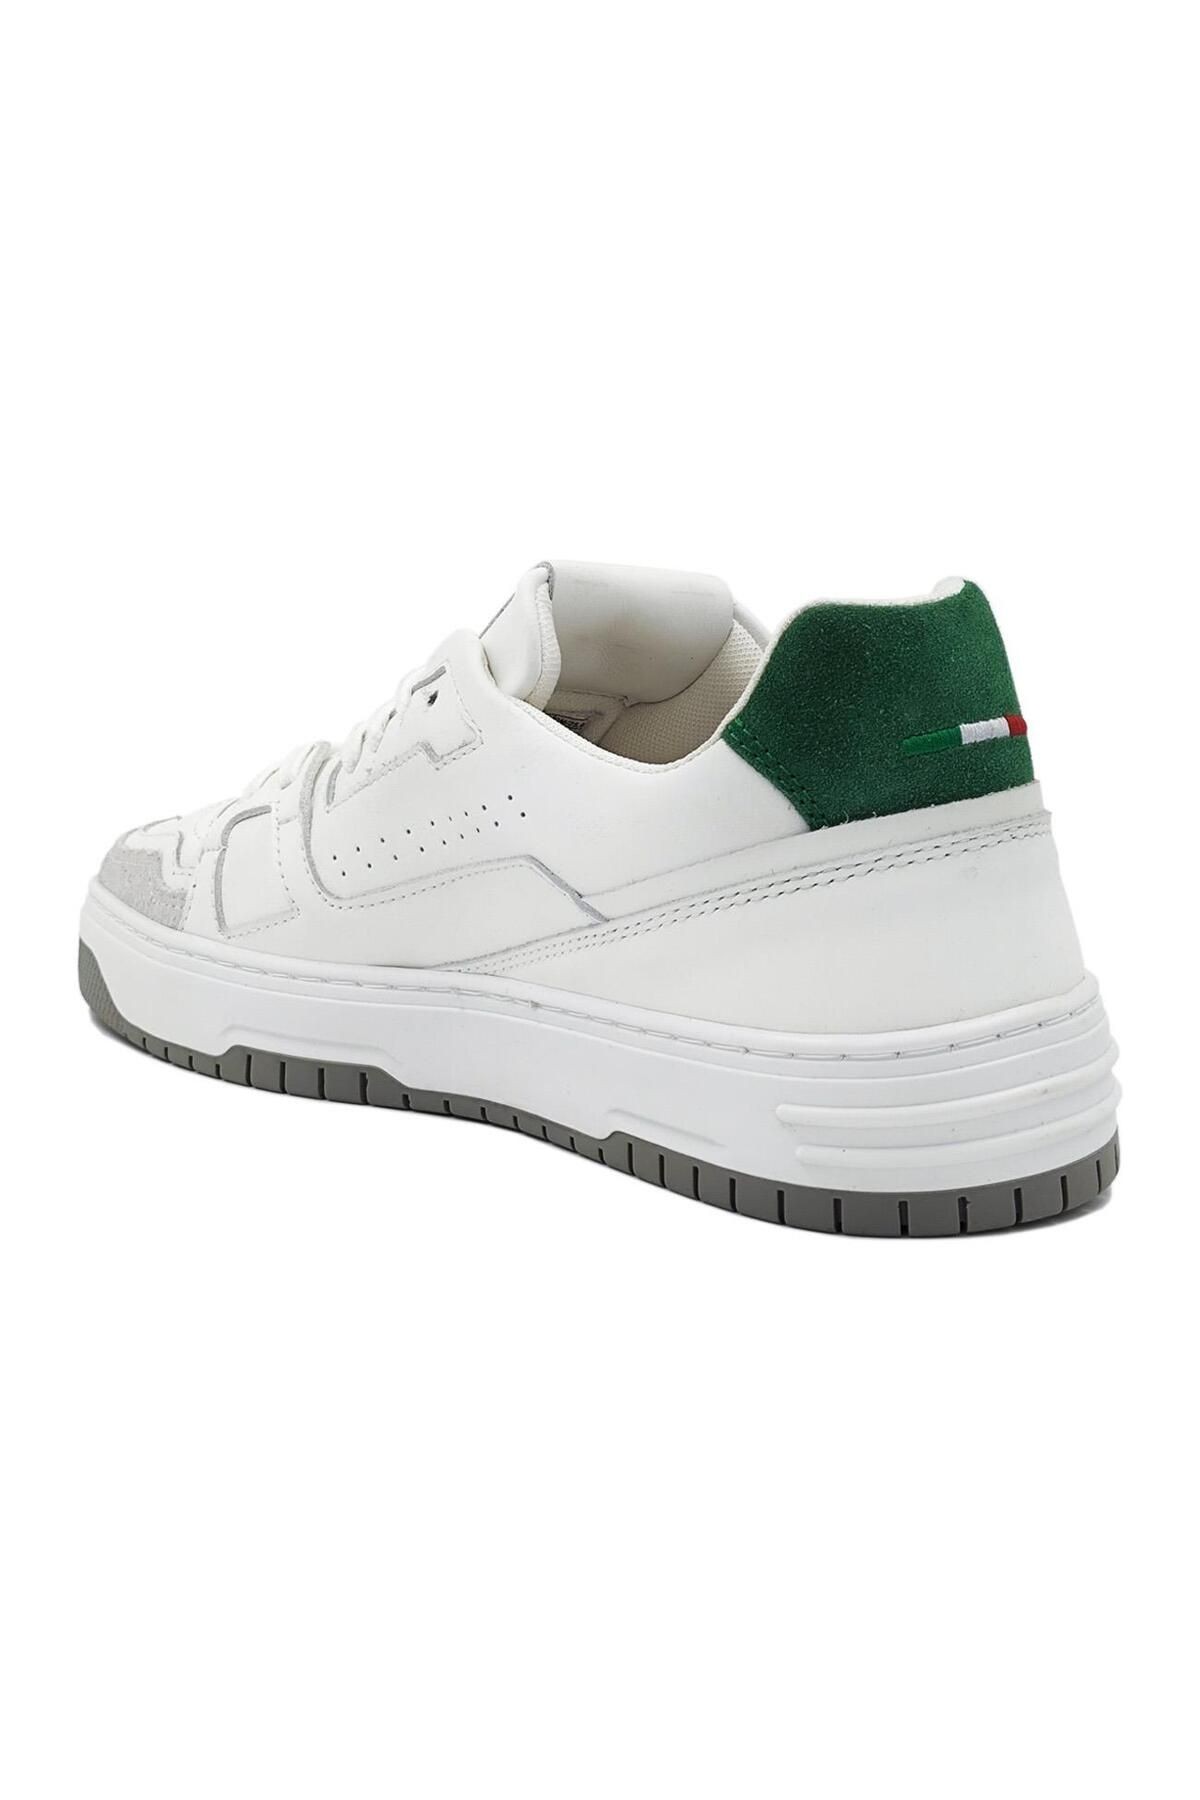 VILLA Erkek Spor Ayakkabı Beyaz-Yeşil